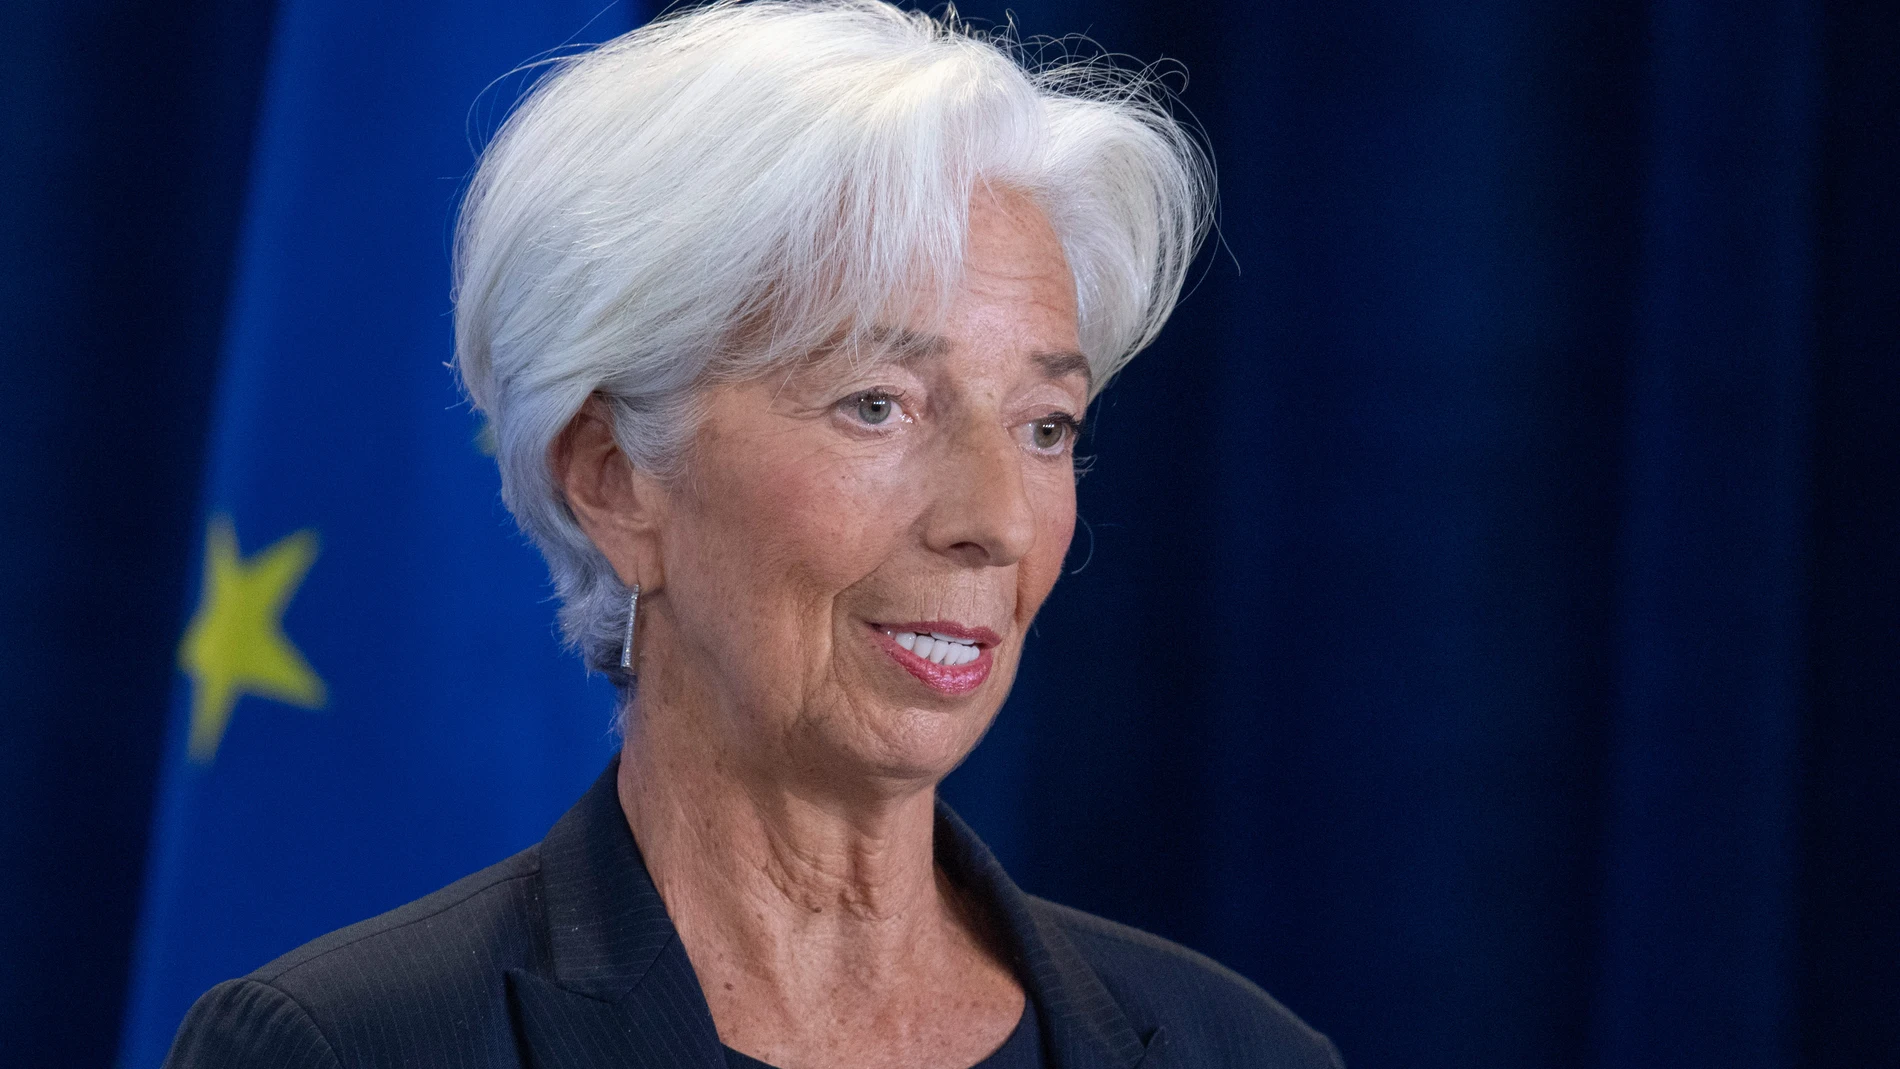 Economía/Finanzas.- Lagarde ve probable que el BCE baje tipos en verano